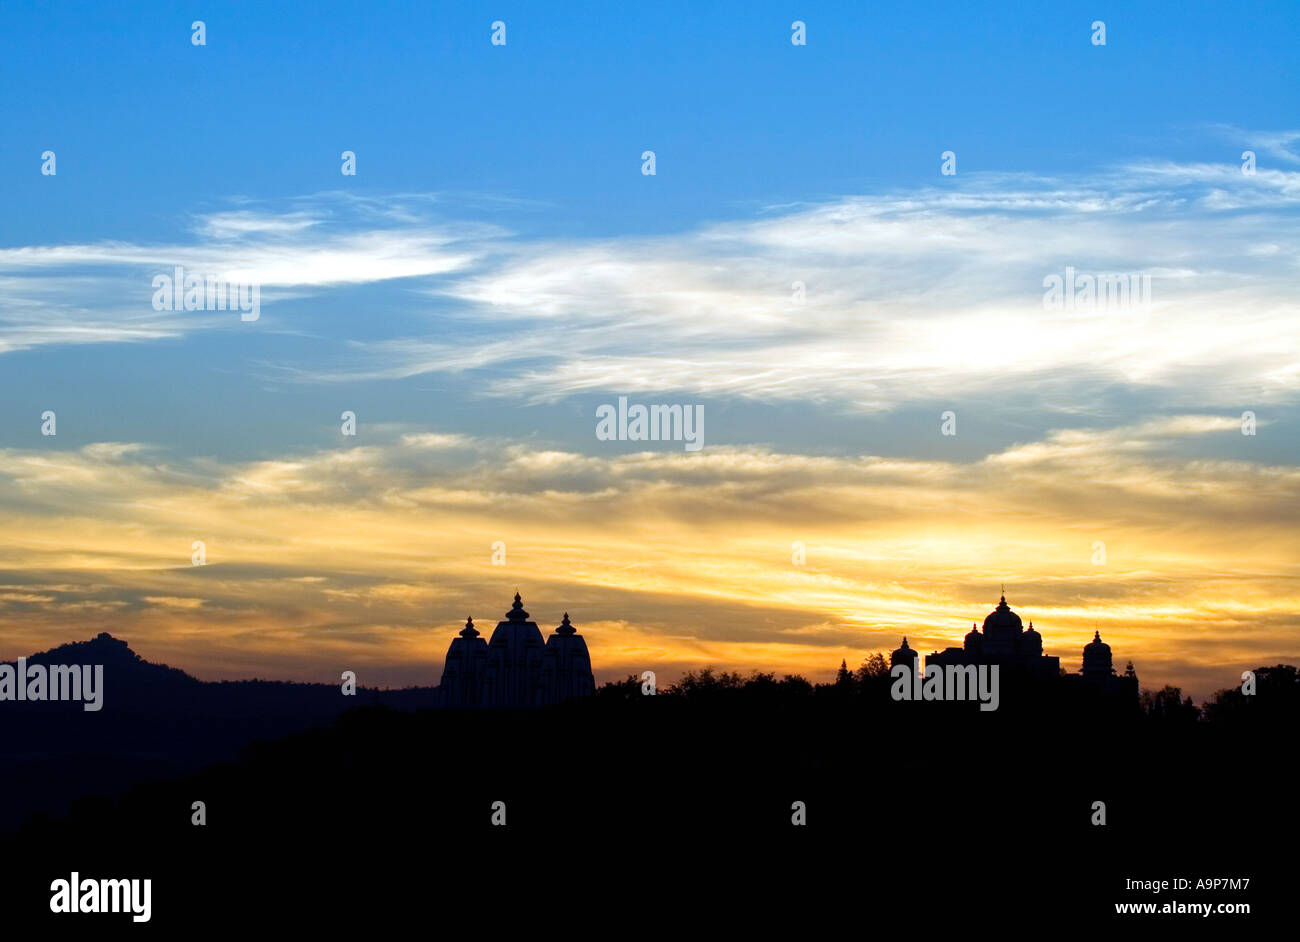 Sonnenaufgang über Sathya Sai Baba Ashram in Puttaparthi Architekturgebäude Silhouetten zeigen. Andhra Pradesh, Indien Stockfoto